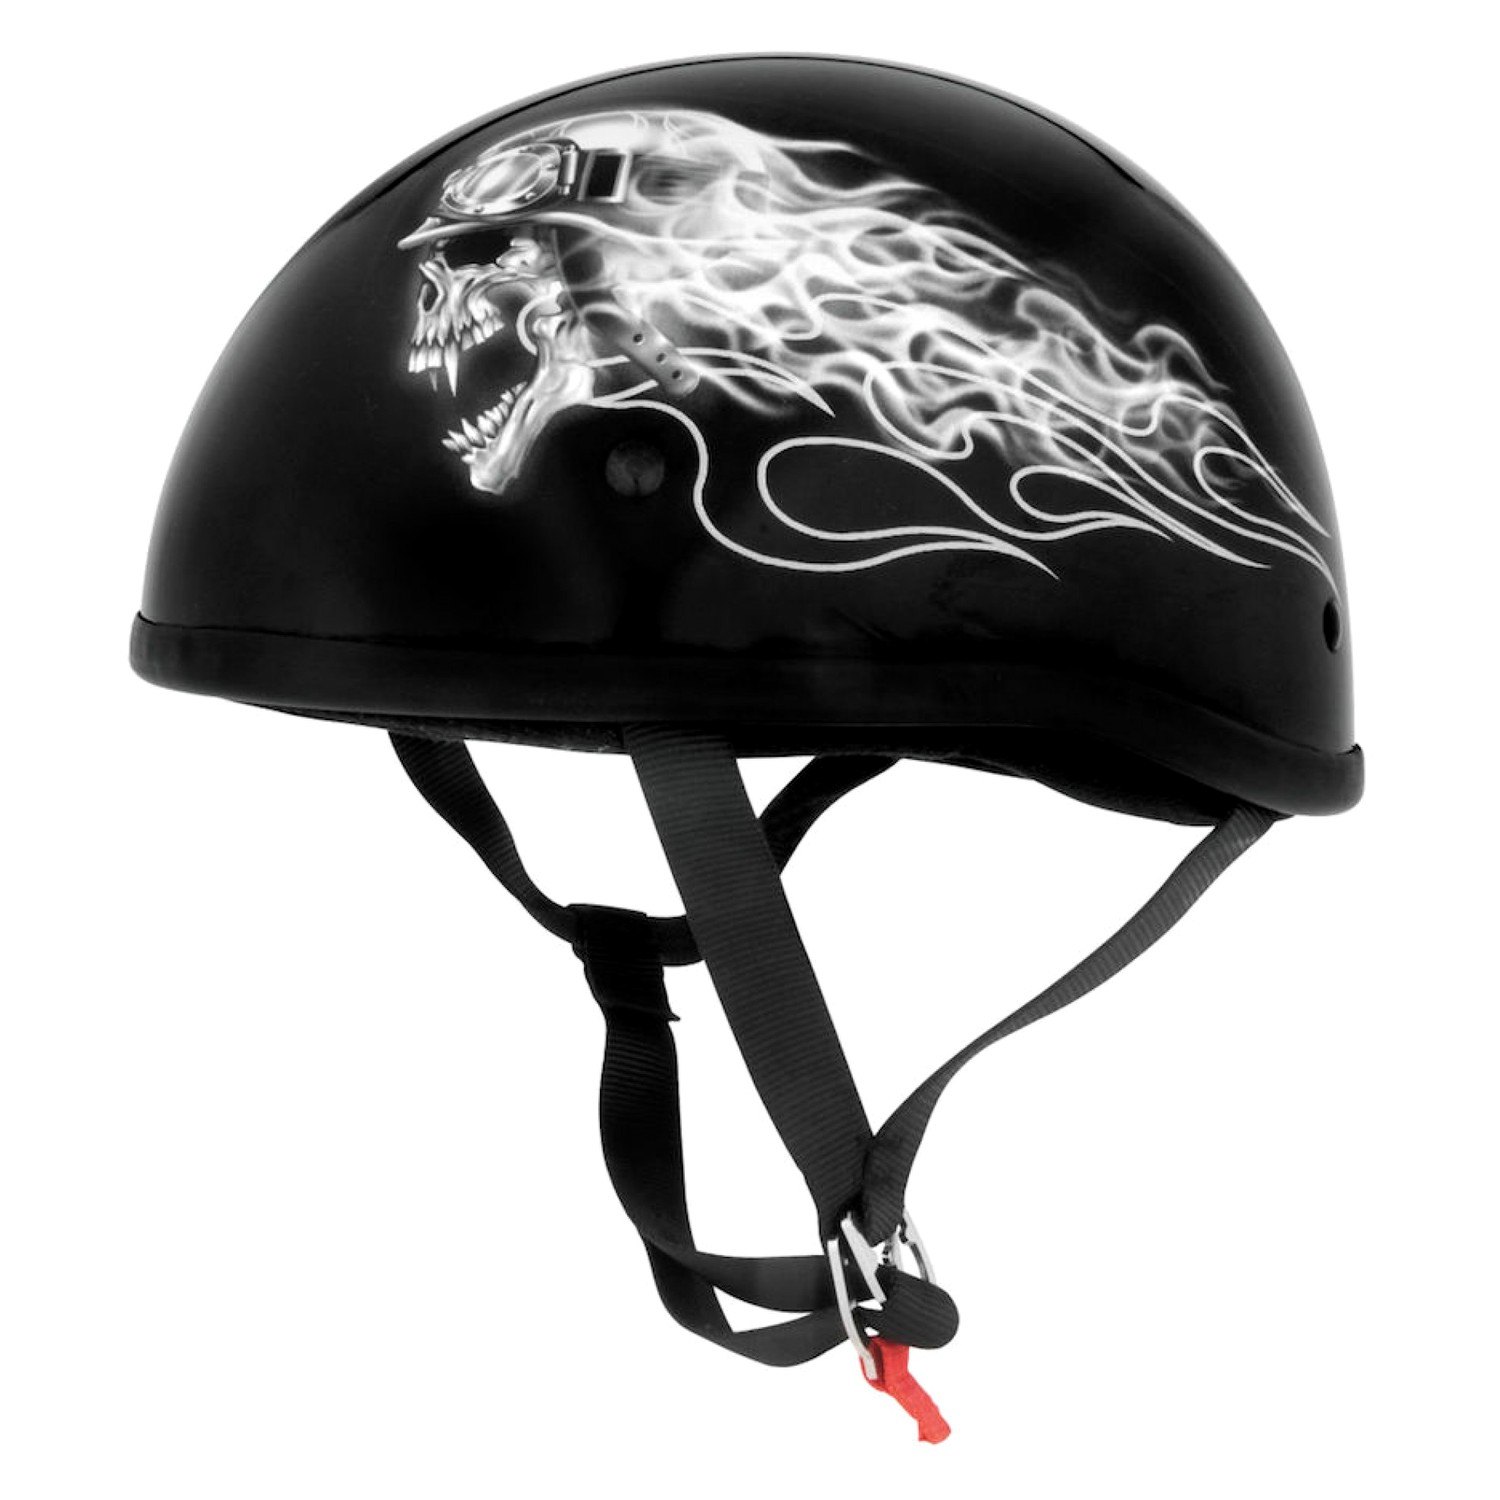 Stige uddøde Jabeth Wilson Skid Lid® - Original Biker Skull Half Shell Helmet - MOTORCYCLEiD.com